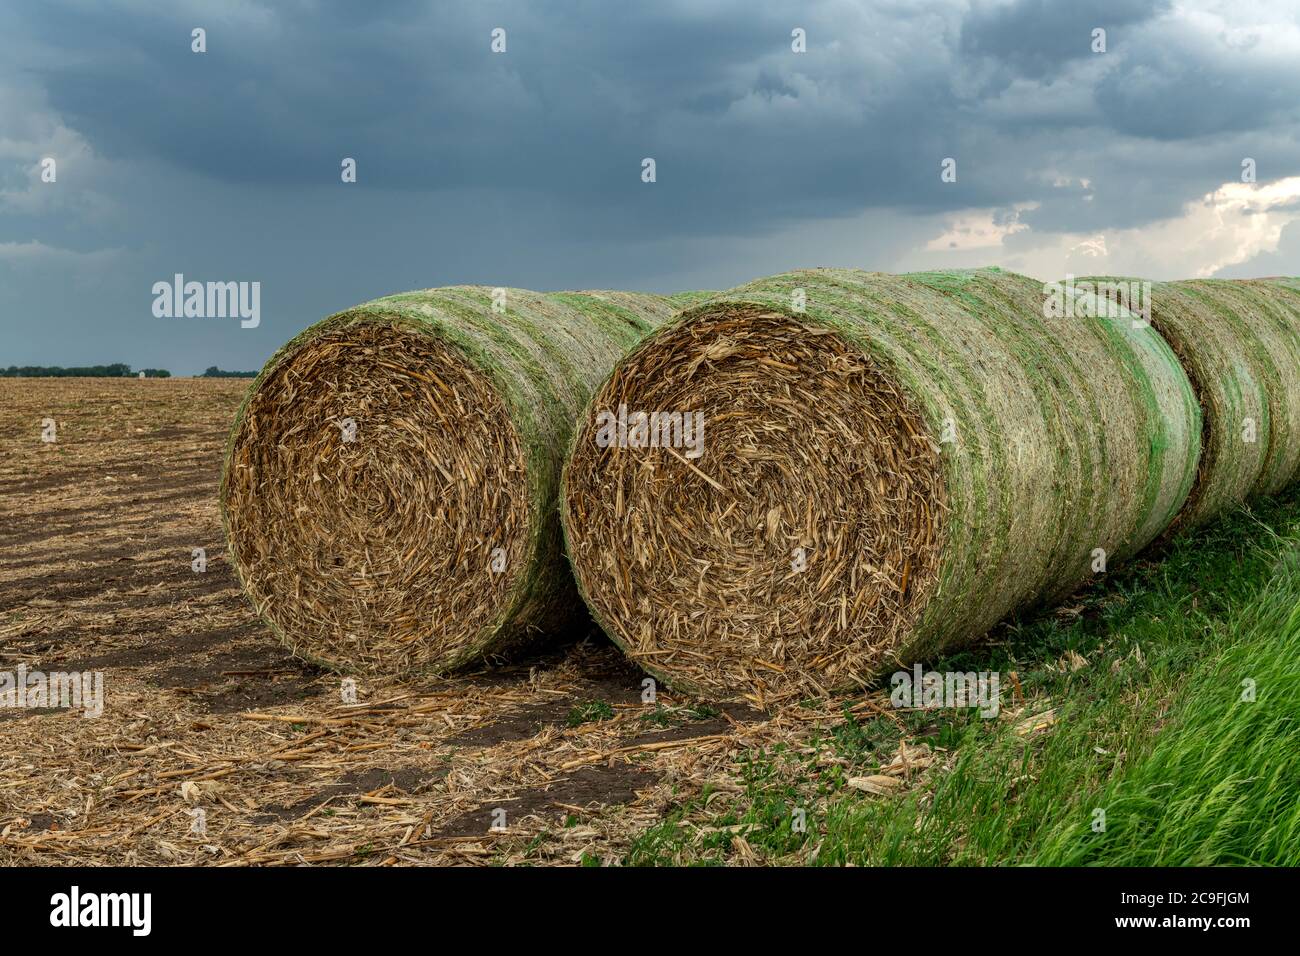 Venti balle di fieno sono accatastate su una collina in una fattoria nel Midwest. Il fieno viene utilizzato come mangime per vari animali da fattoria. Foto Stock